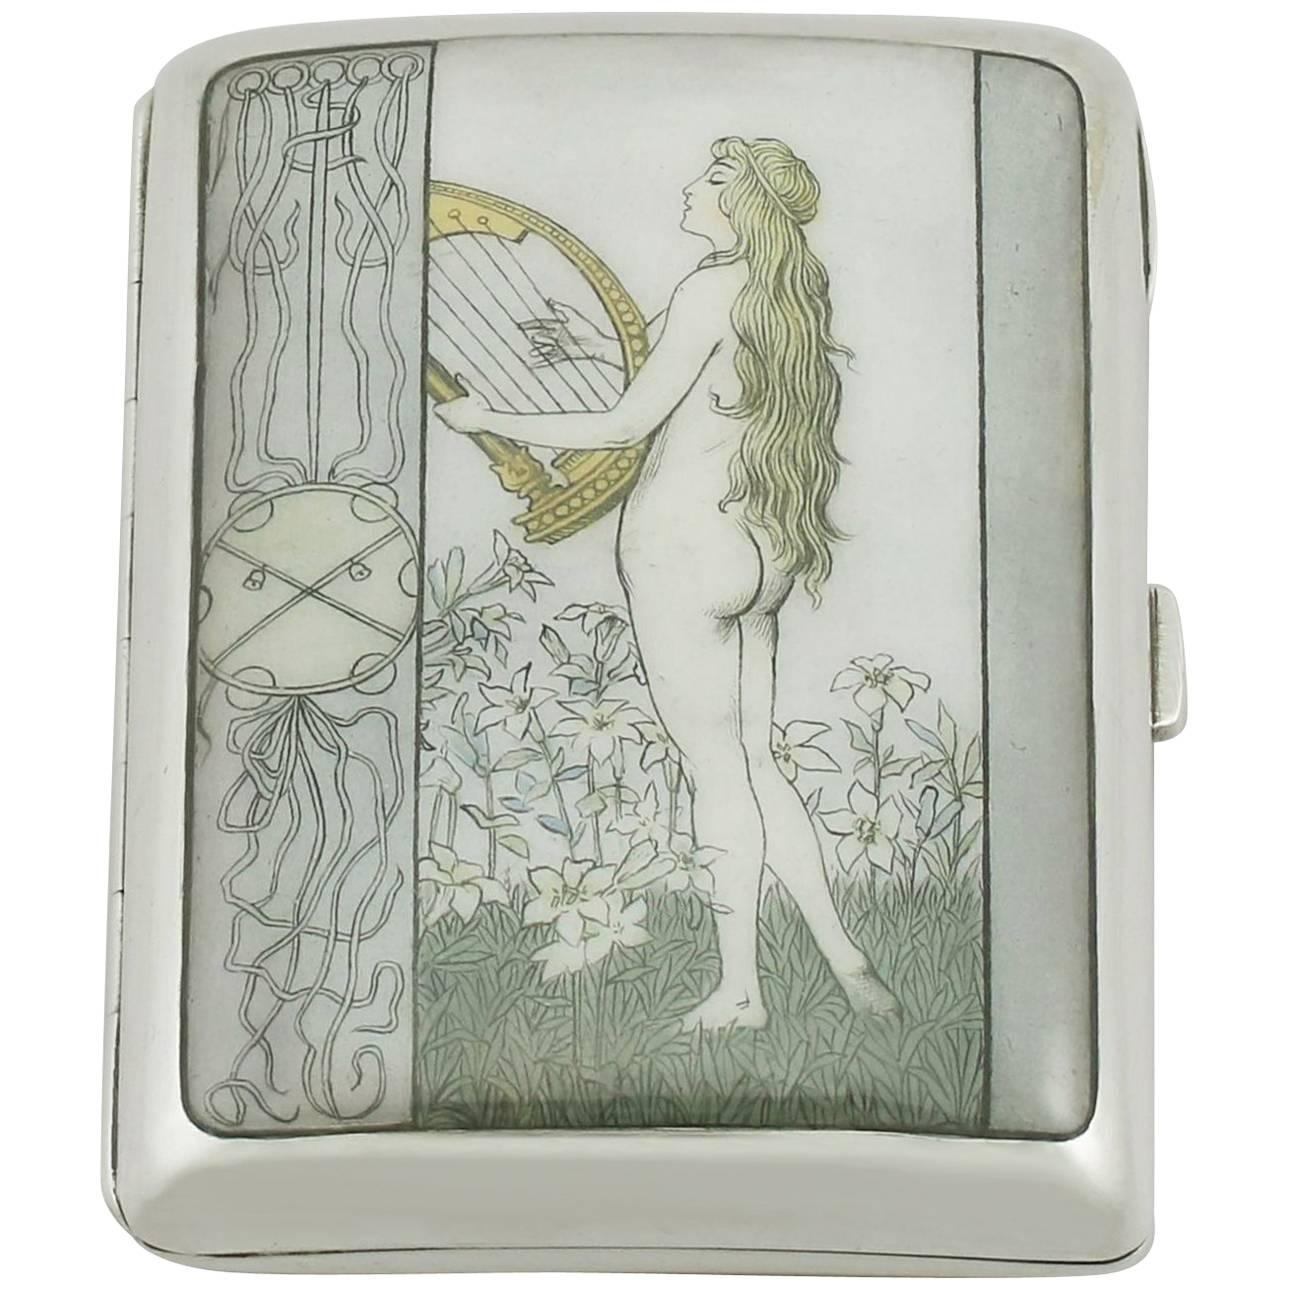 Art Nouveau Style Austro-Hungarian Silver and Enamel Cigarette/Card Case